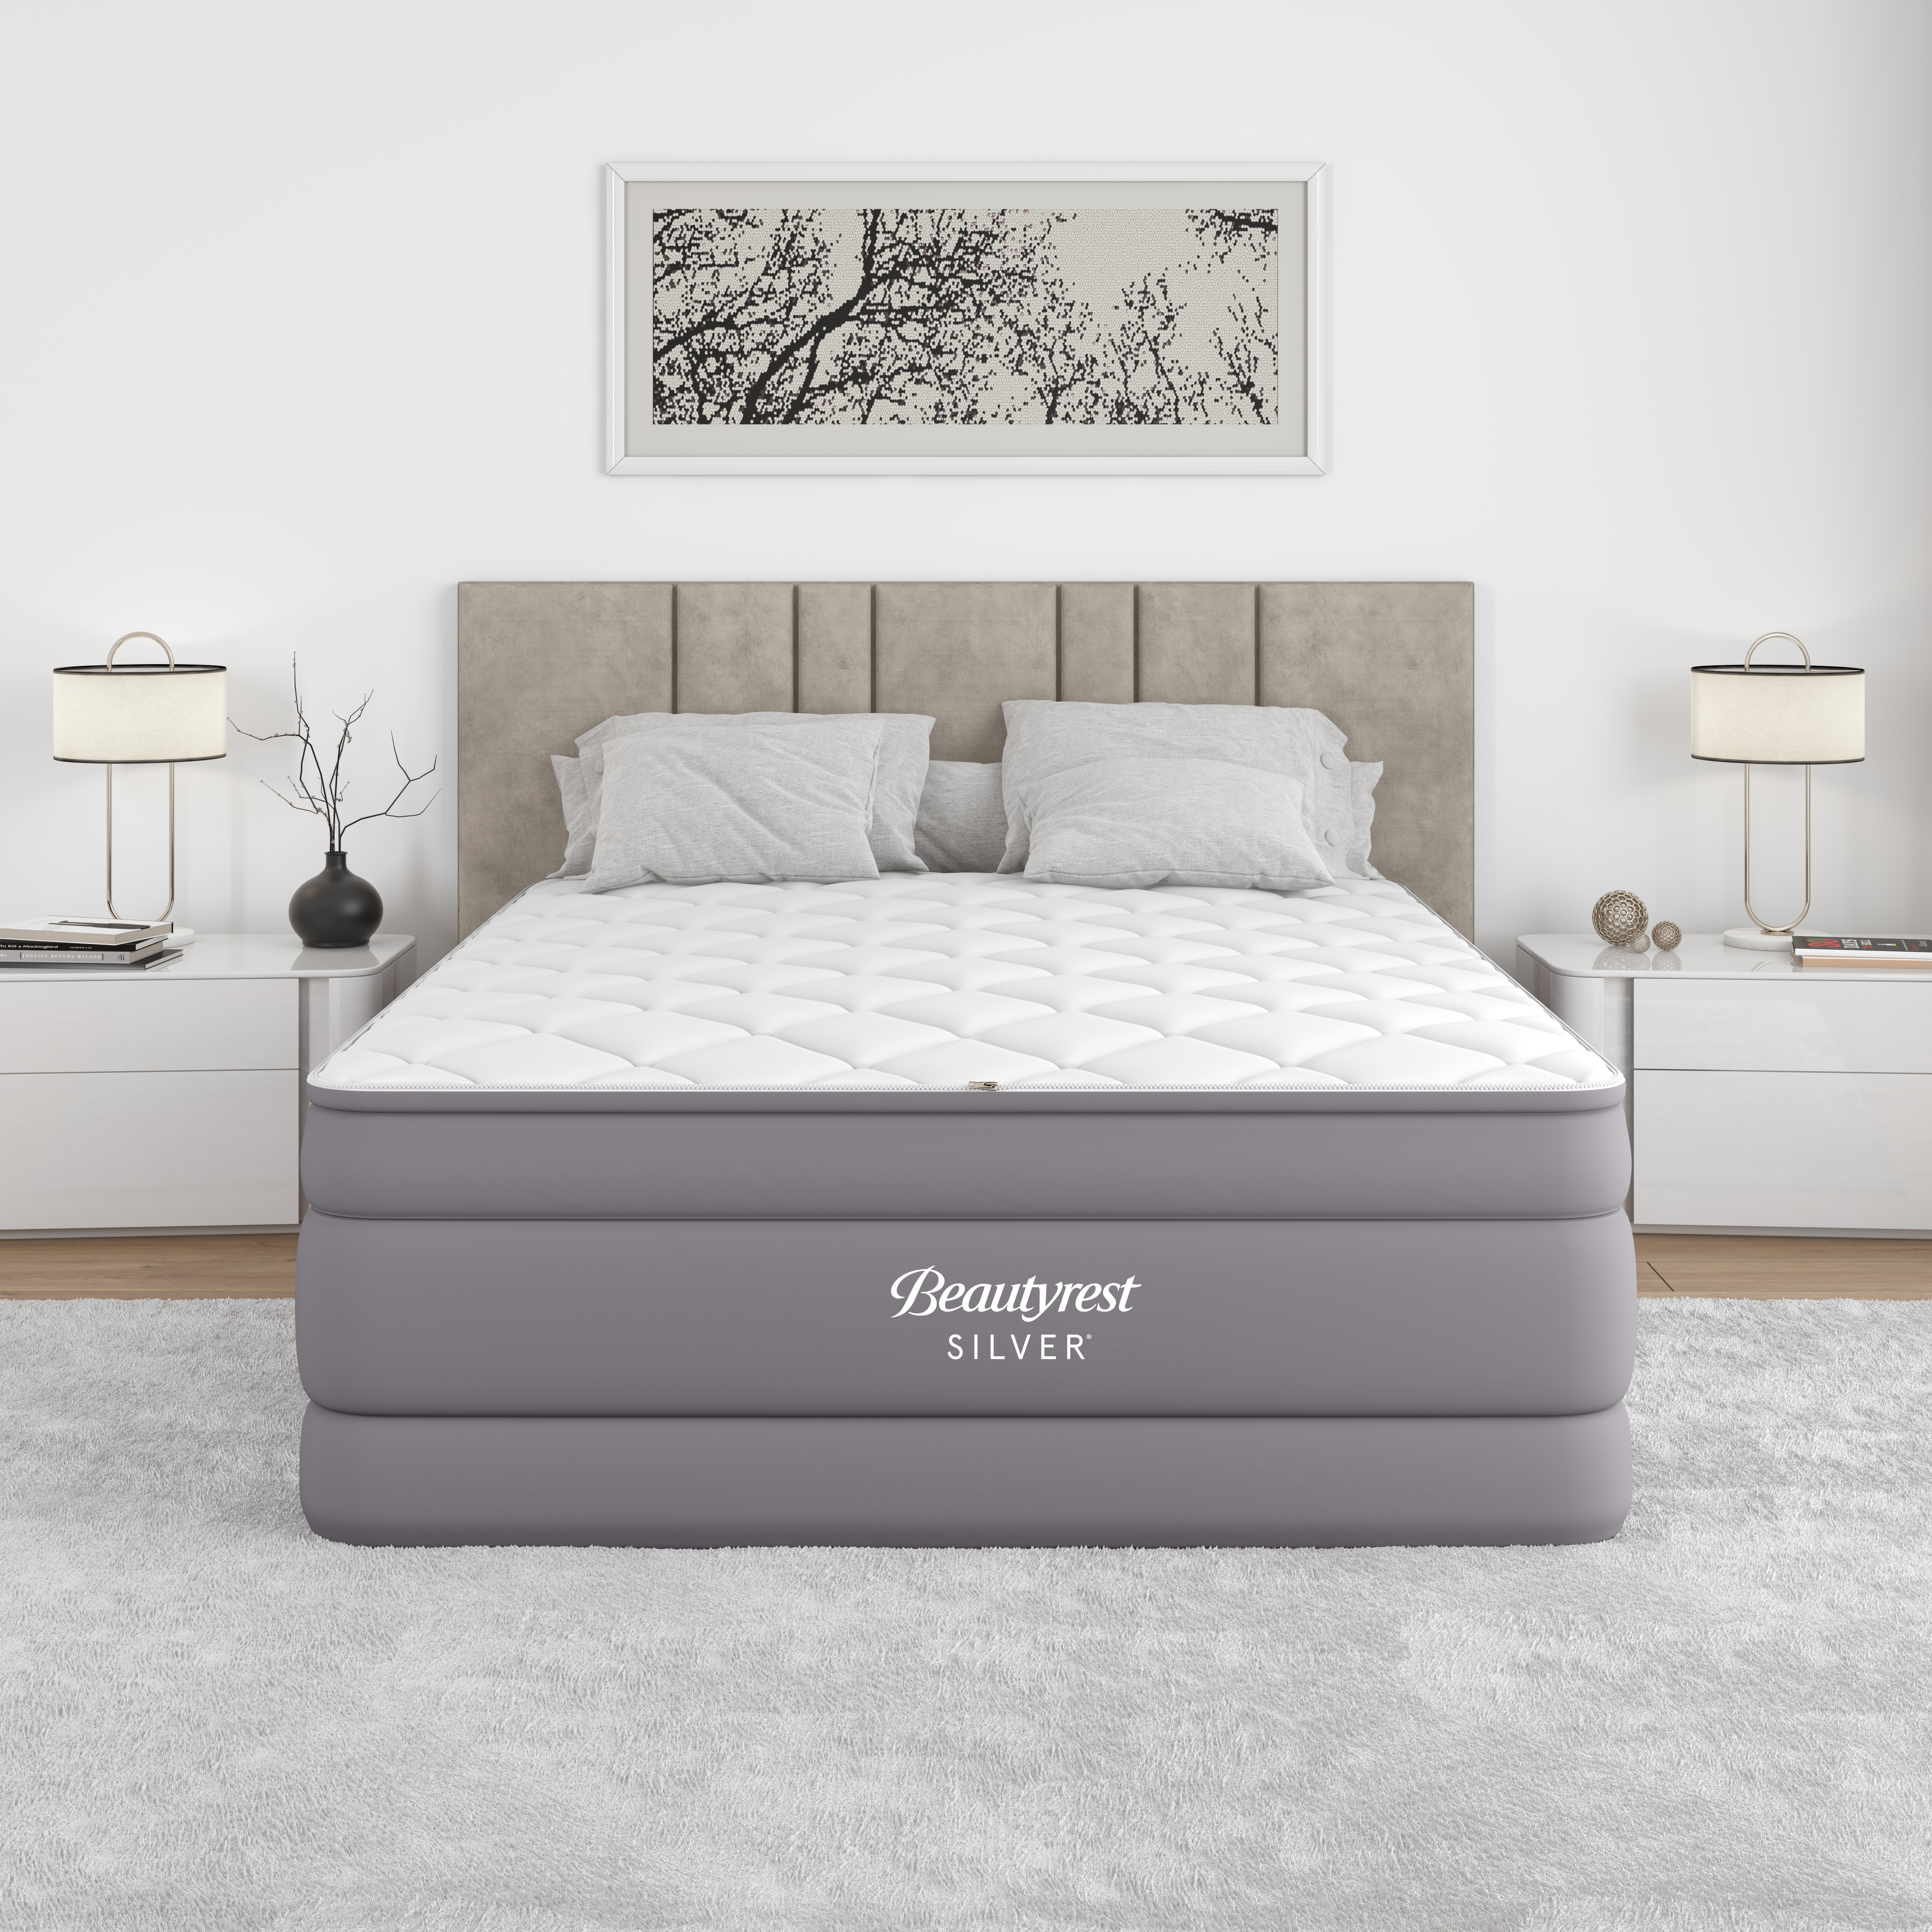 beautyrest-silver-quilted-pillowtop-cushionaire-air-mattress-queen